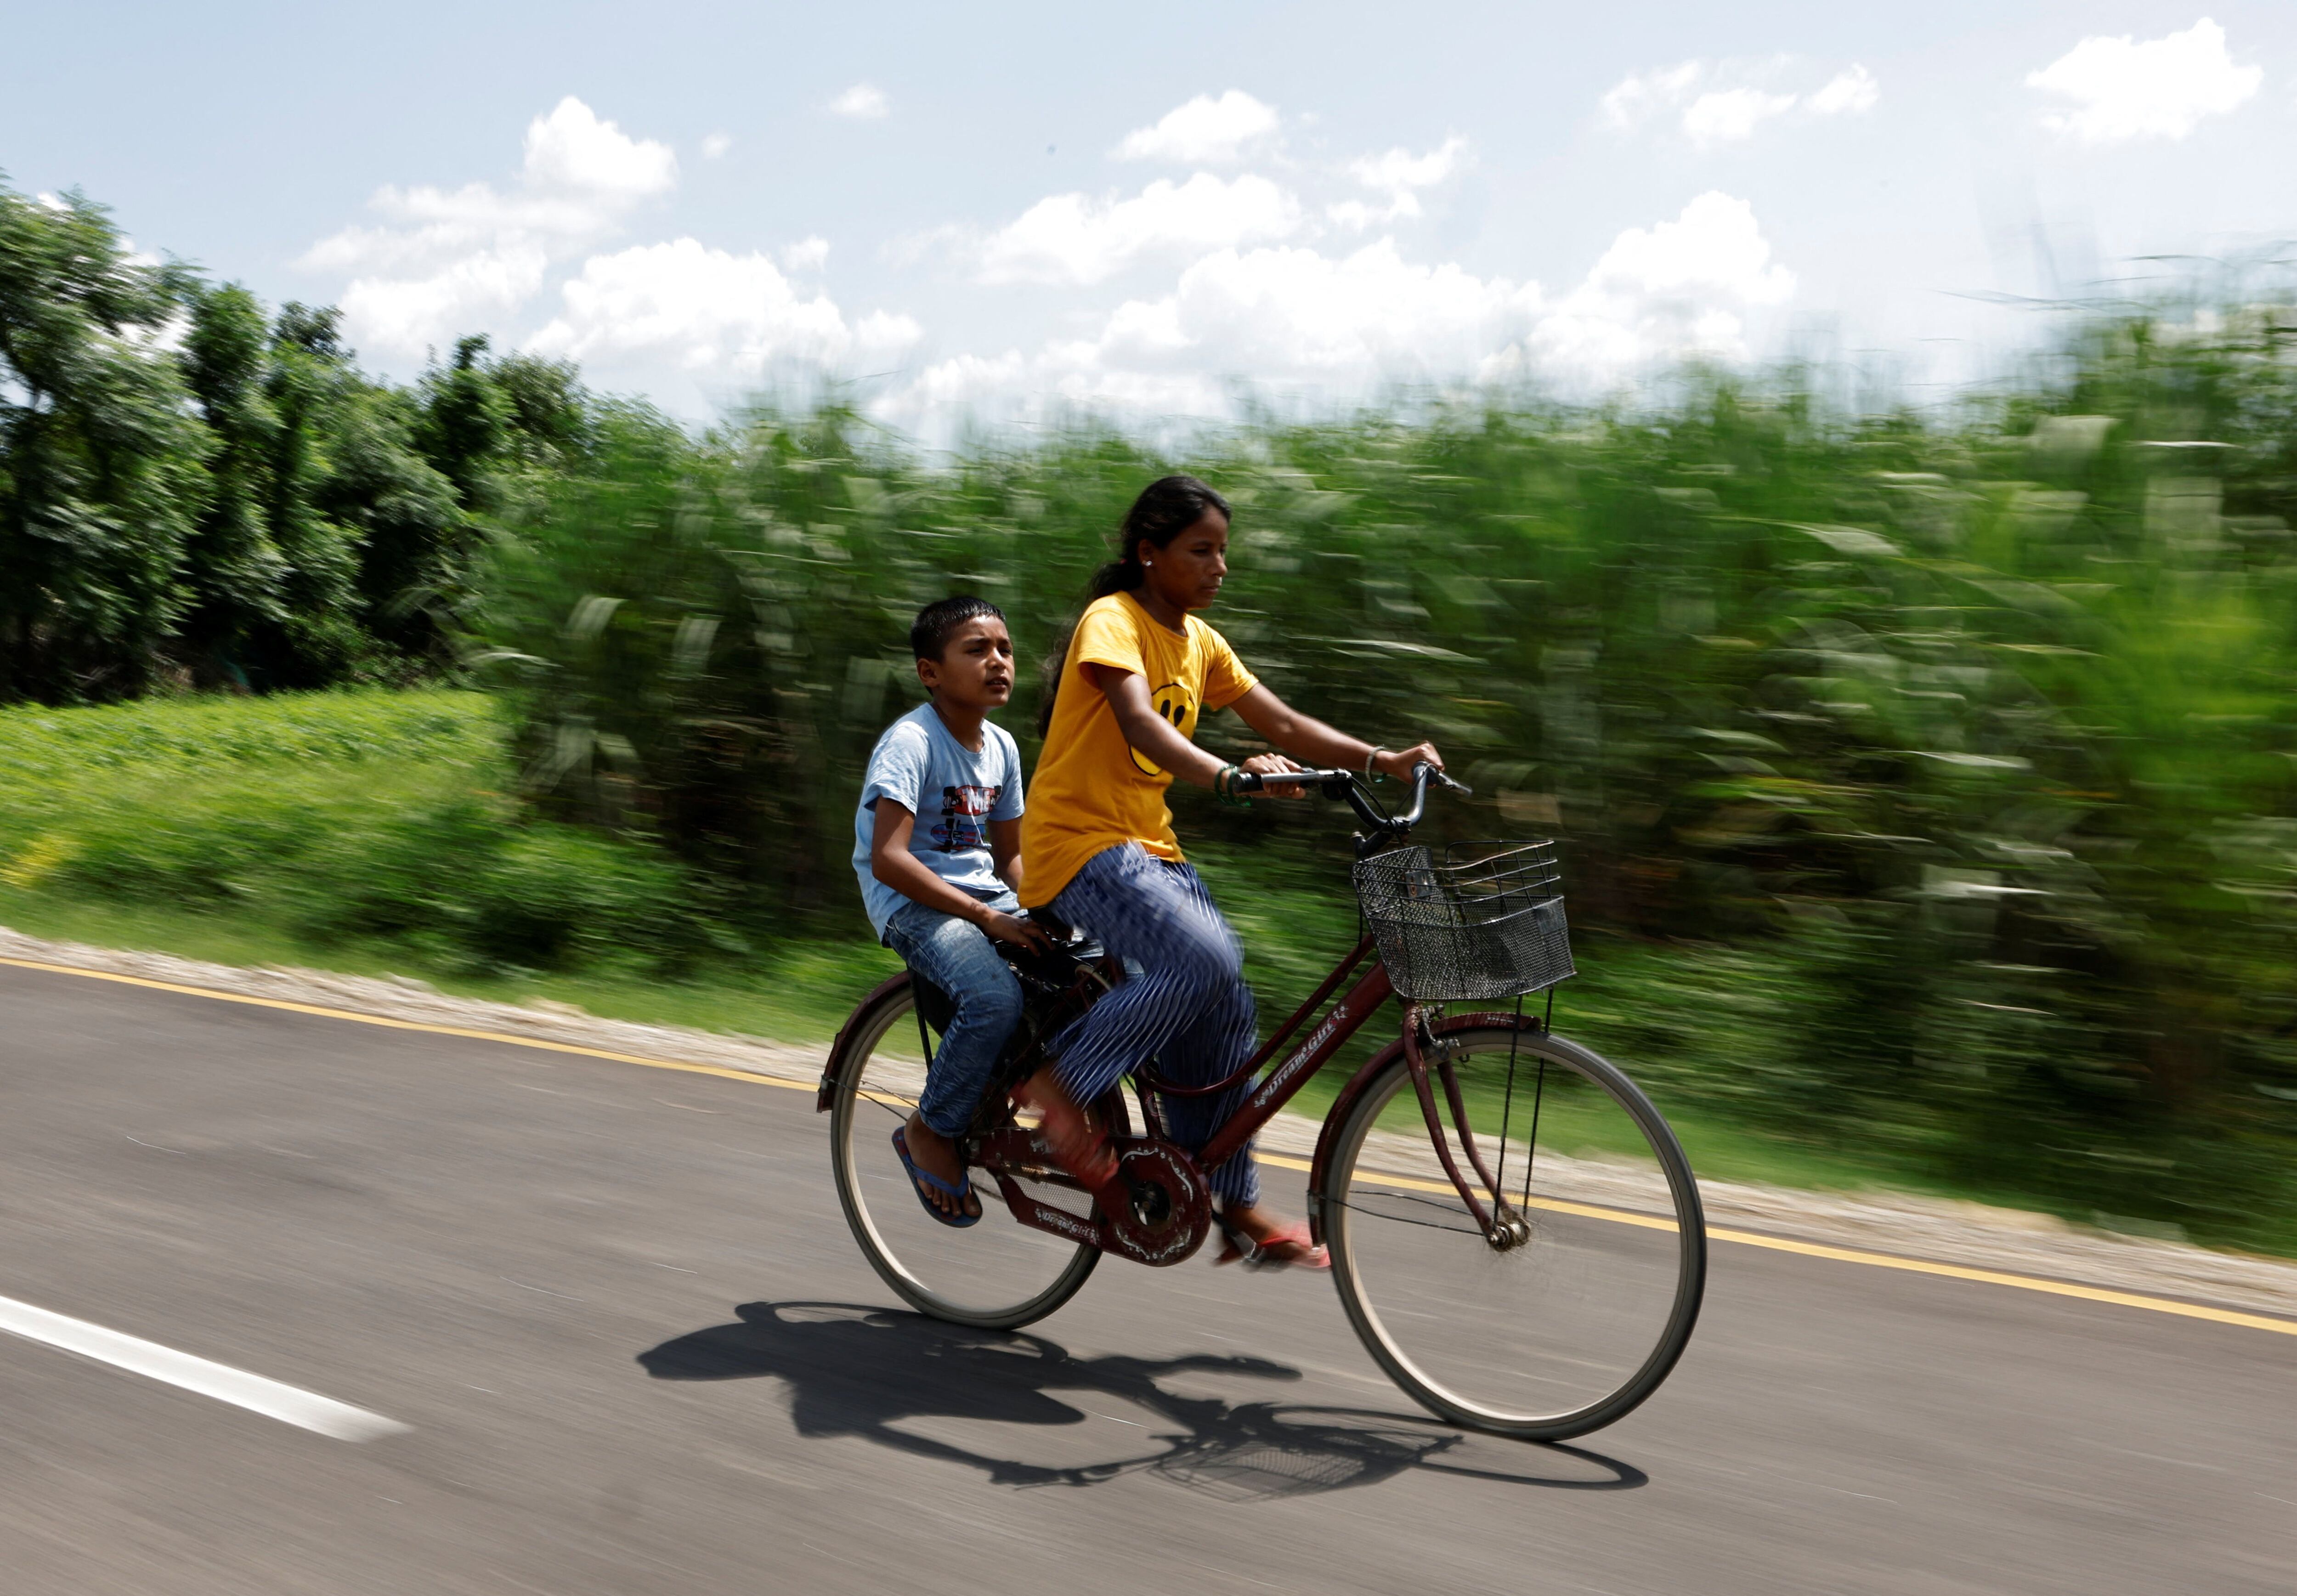 Resham va de pasajero en la bicicleta con su madre, camino a las clases de informática. “Charlamos en el camino y aprendemos de nuestra conversación”, dice el niño. 